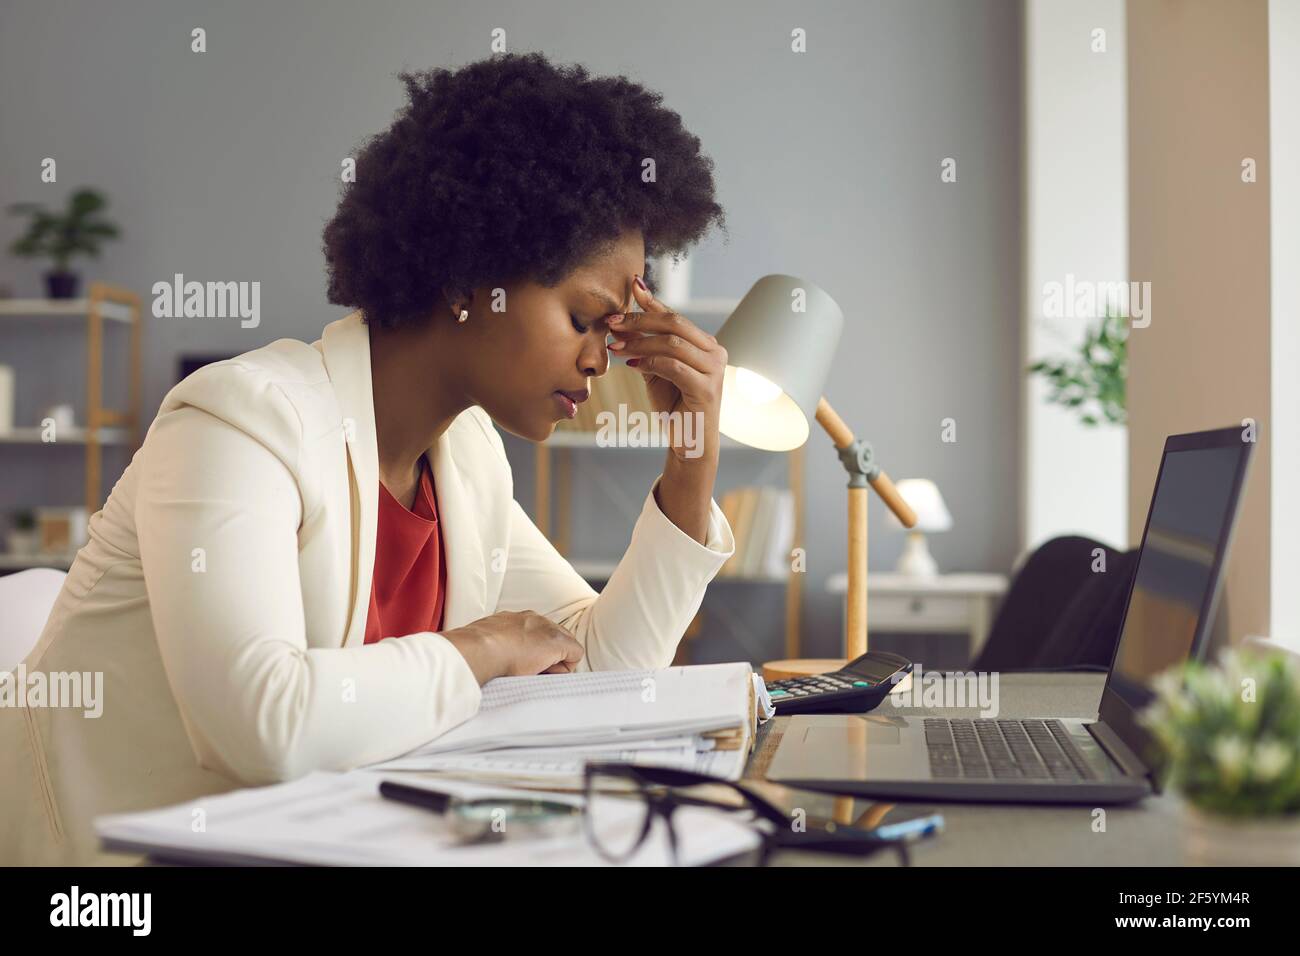 Frustrierte afroamerikanische Frau, die die Augen geschlossen hält und die Nase massiert Stockfoto